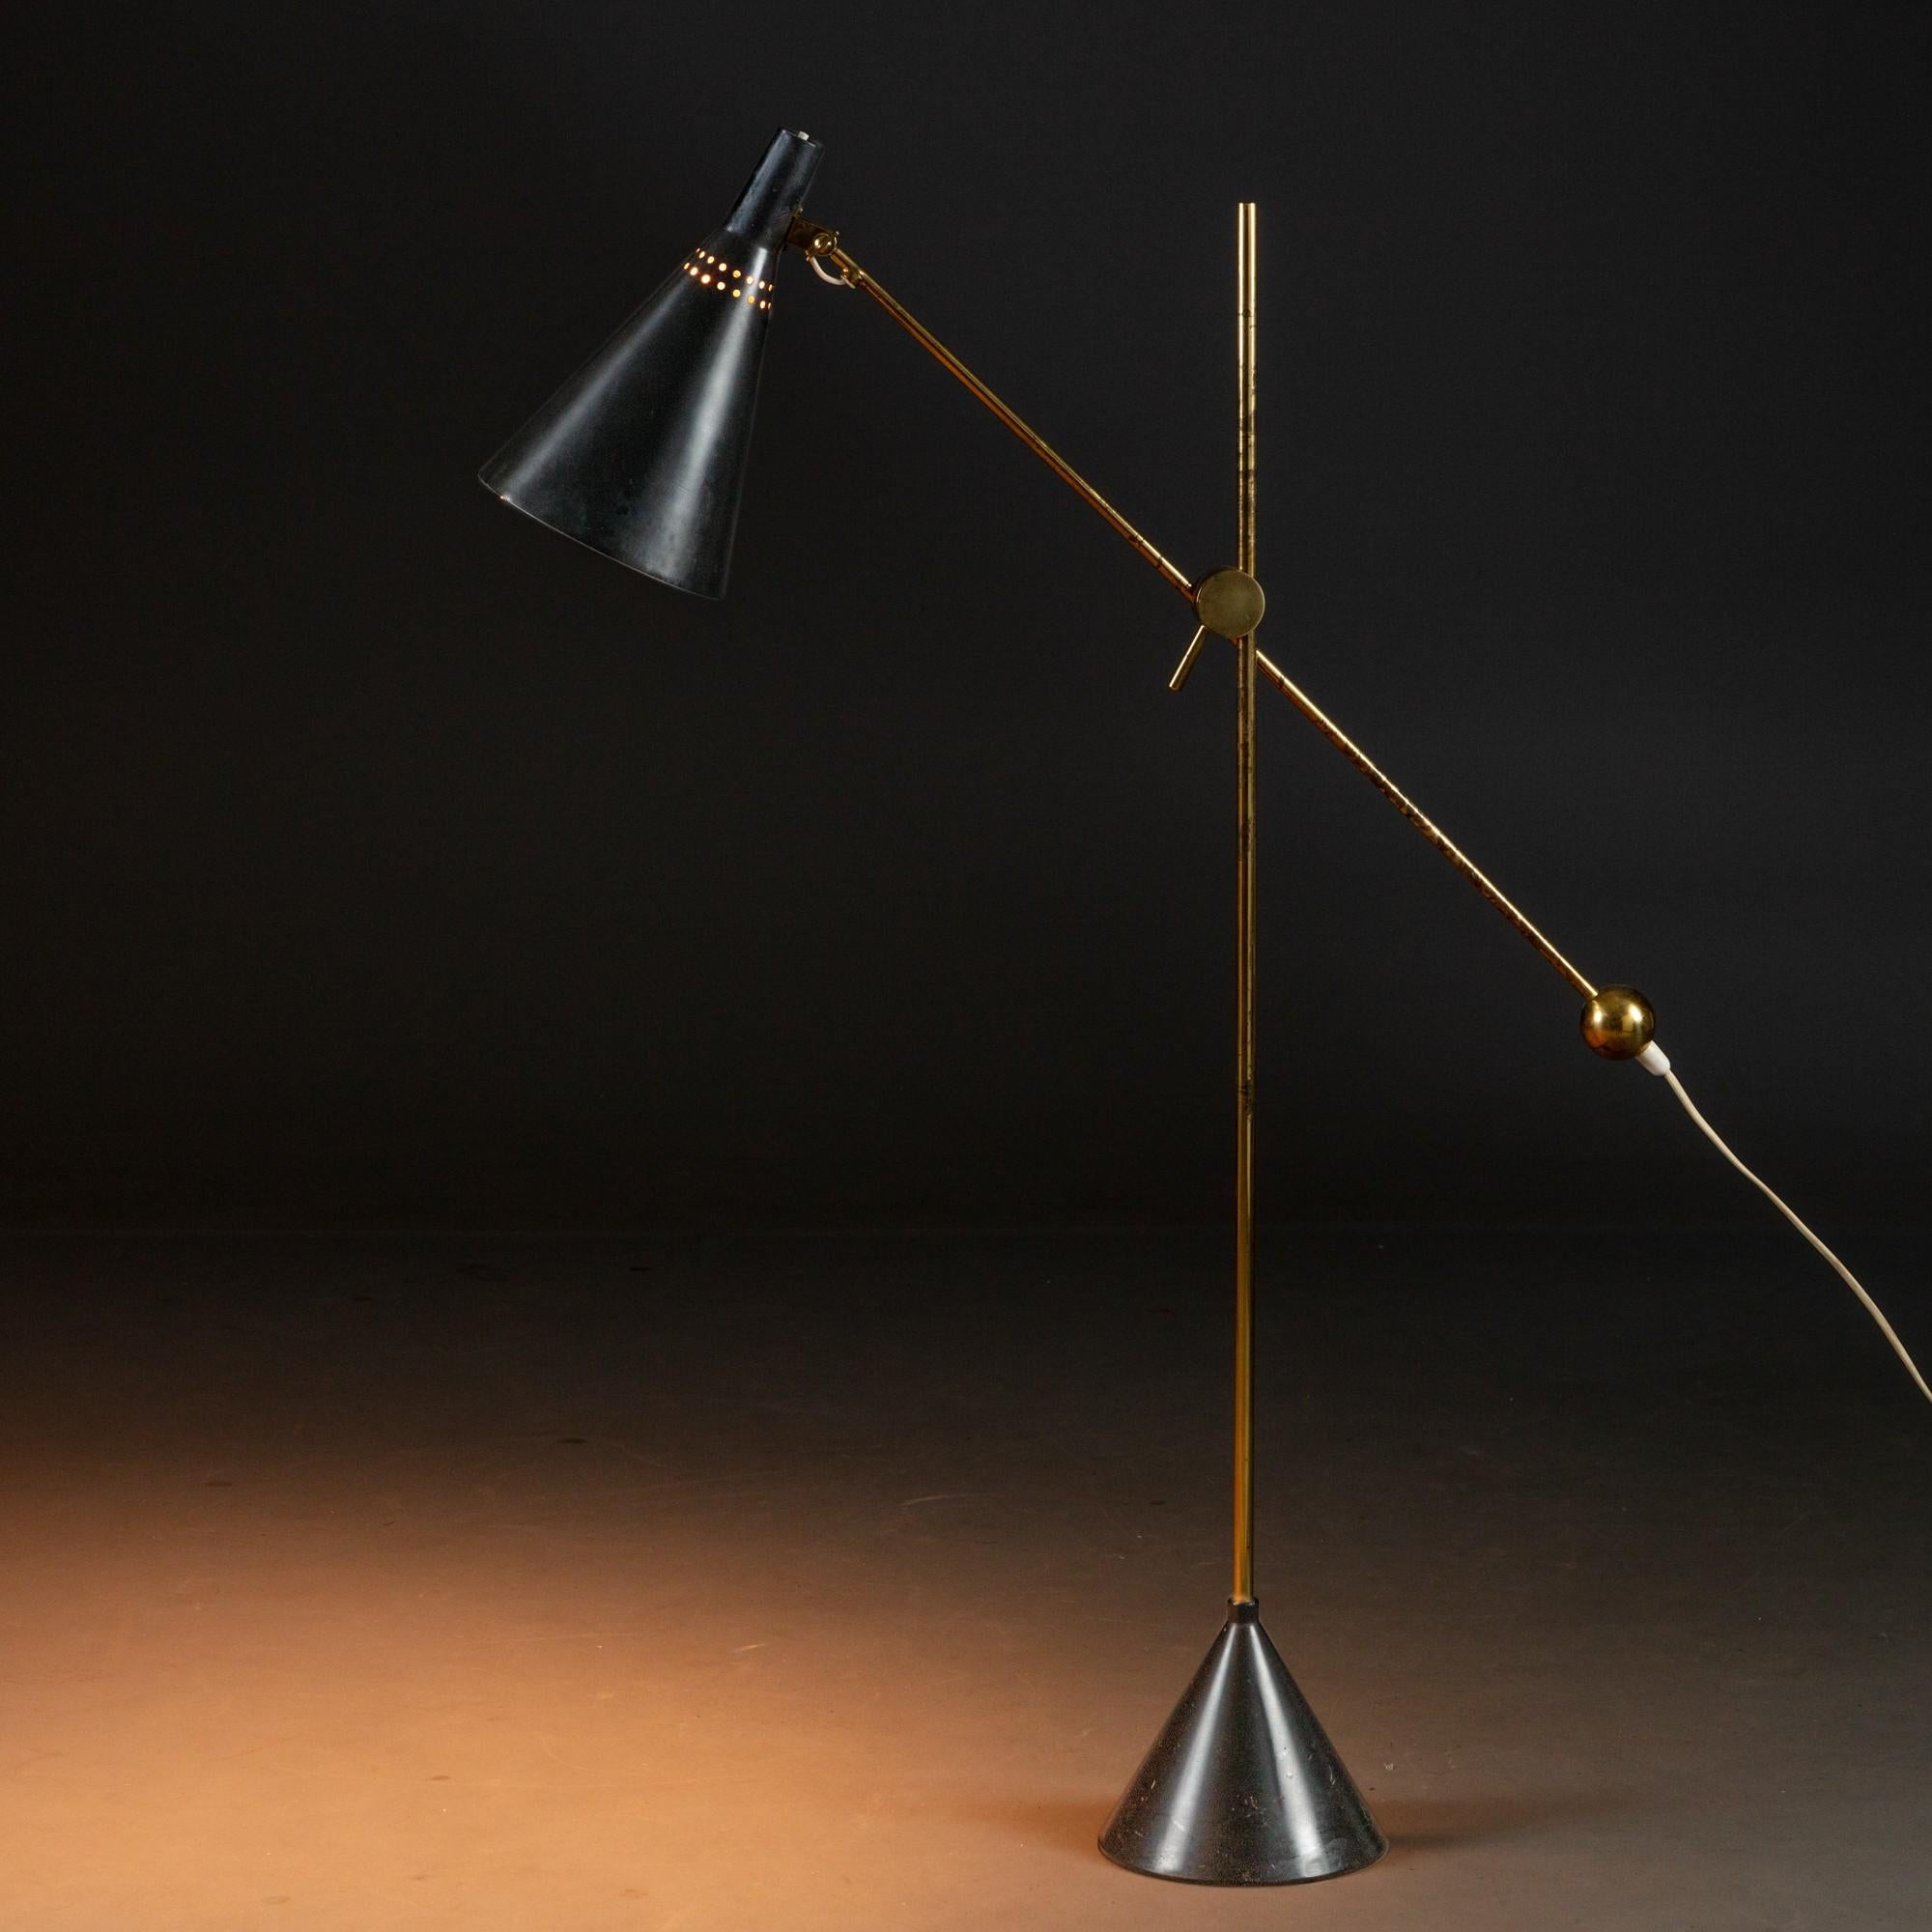 Scandinavian Modern Tapio Wirkkala Model K10-11 Floor / Table Lamp, Made by Idman, Finland, 1950s For Sale